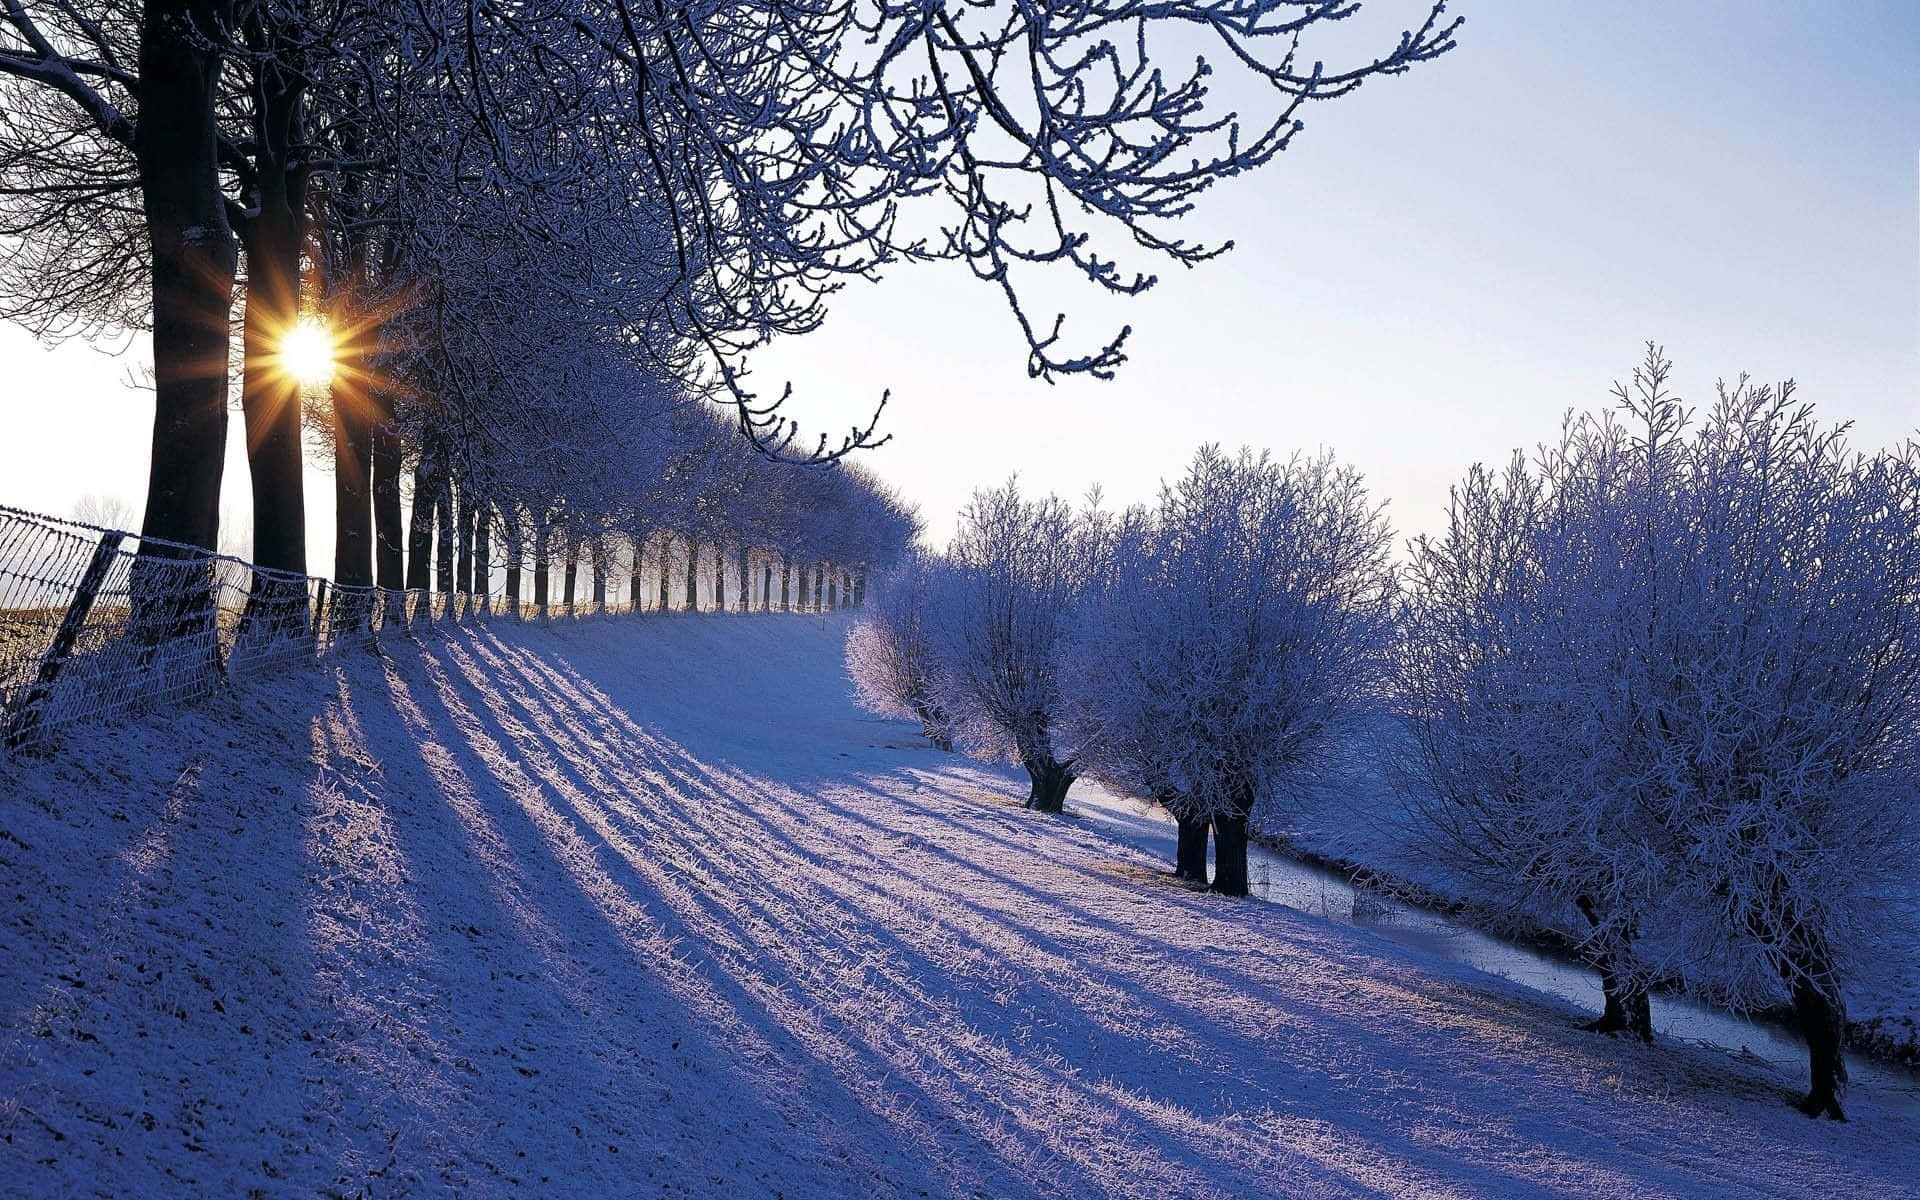 Bellezzanaturale - Una Scena Invernale Che Cattura La Magia Della Stagione